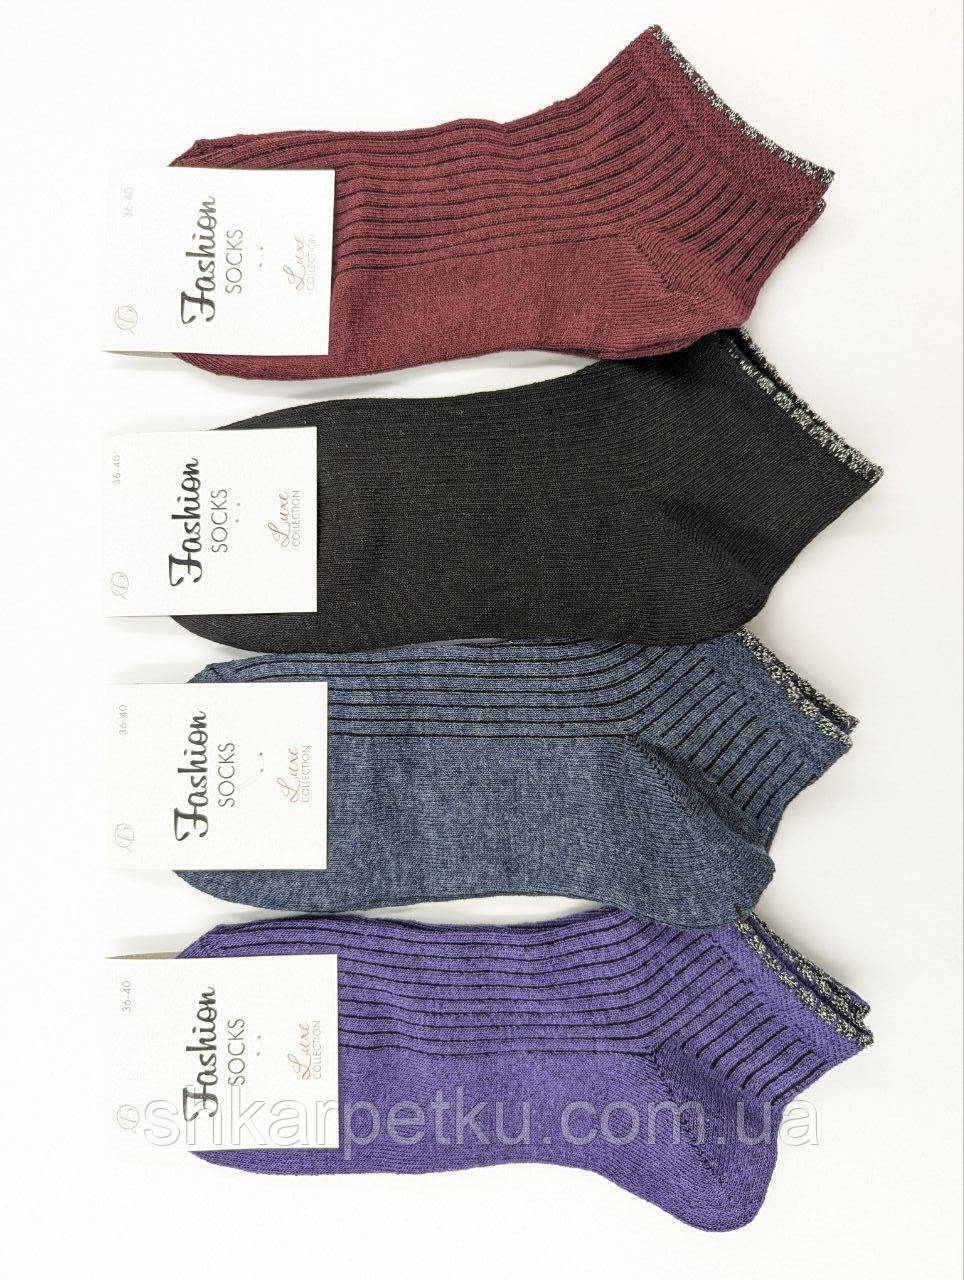 Жіночі короткі шкарпетки Luxe Luxe Fashion socks, літні в рубчик зі смуками та люрексом, розмір 36-40, 12 пар/уп. мікс кольорів